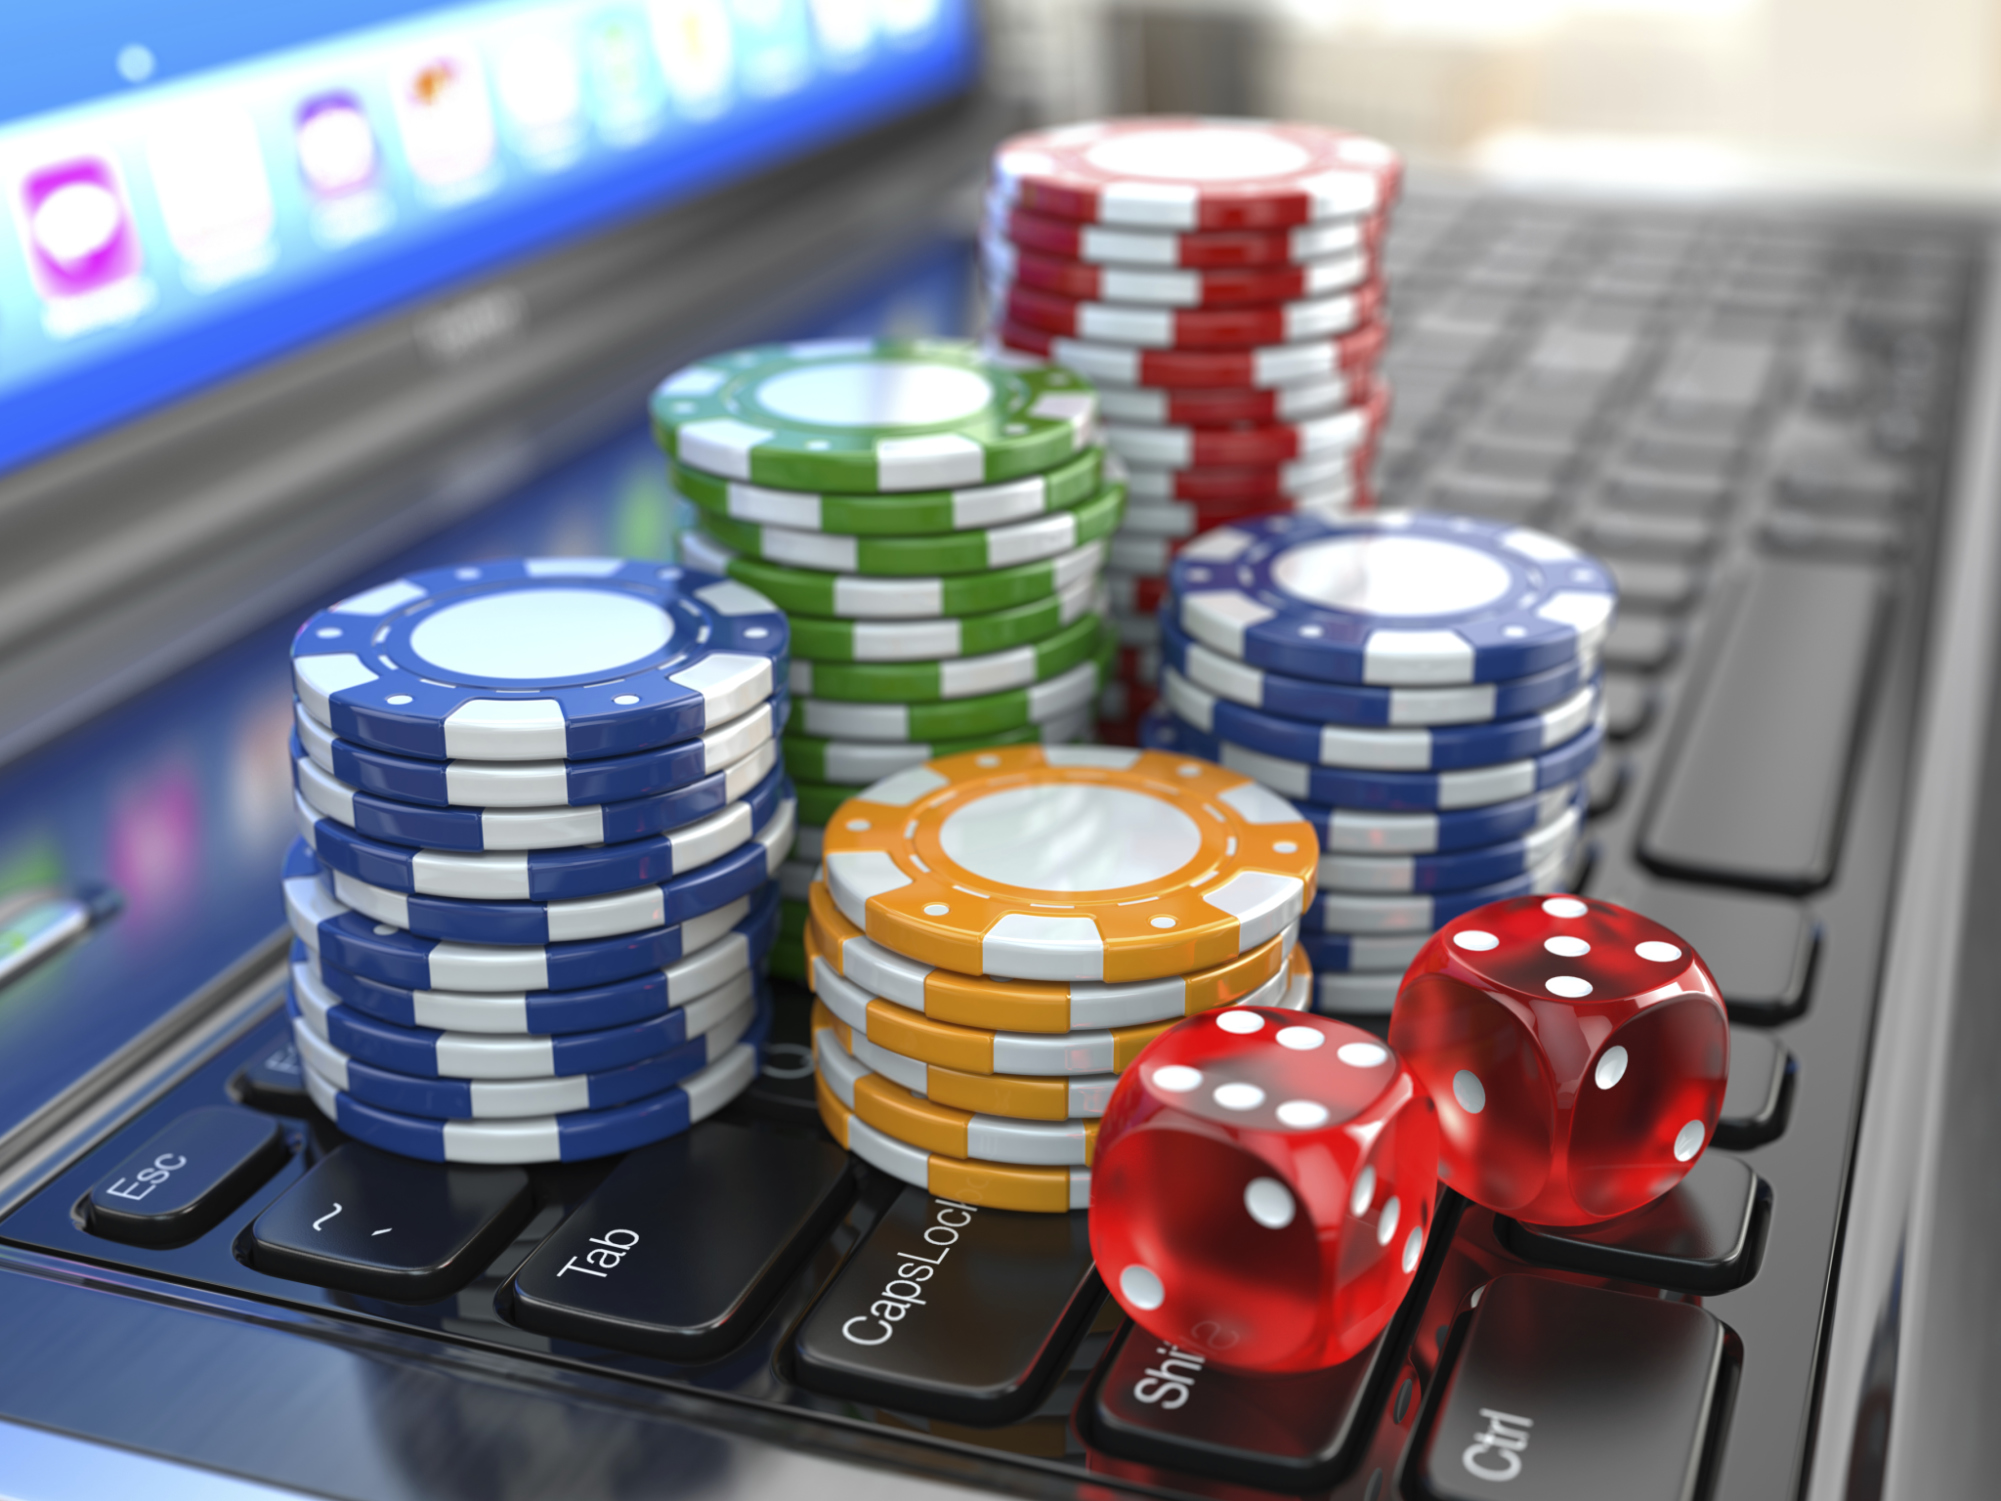 Jetzt können Sie Ihr Casino Online Österreich sicher erstellen lassen